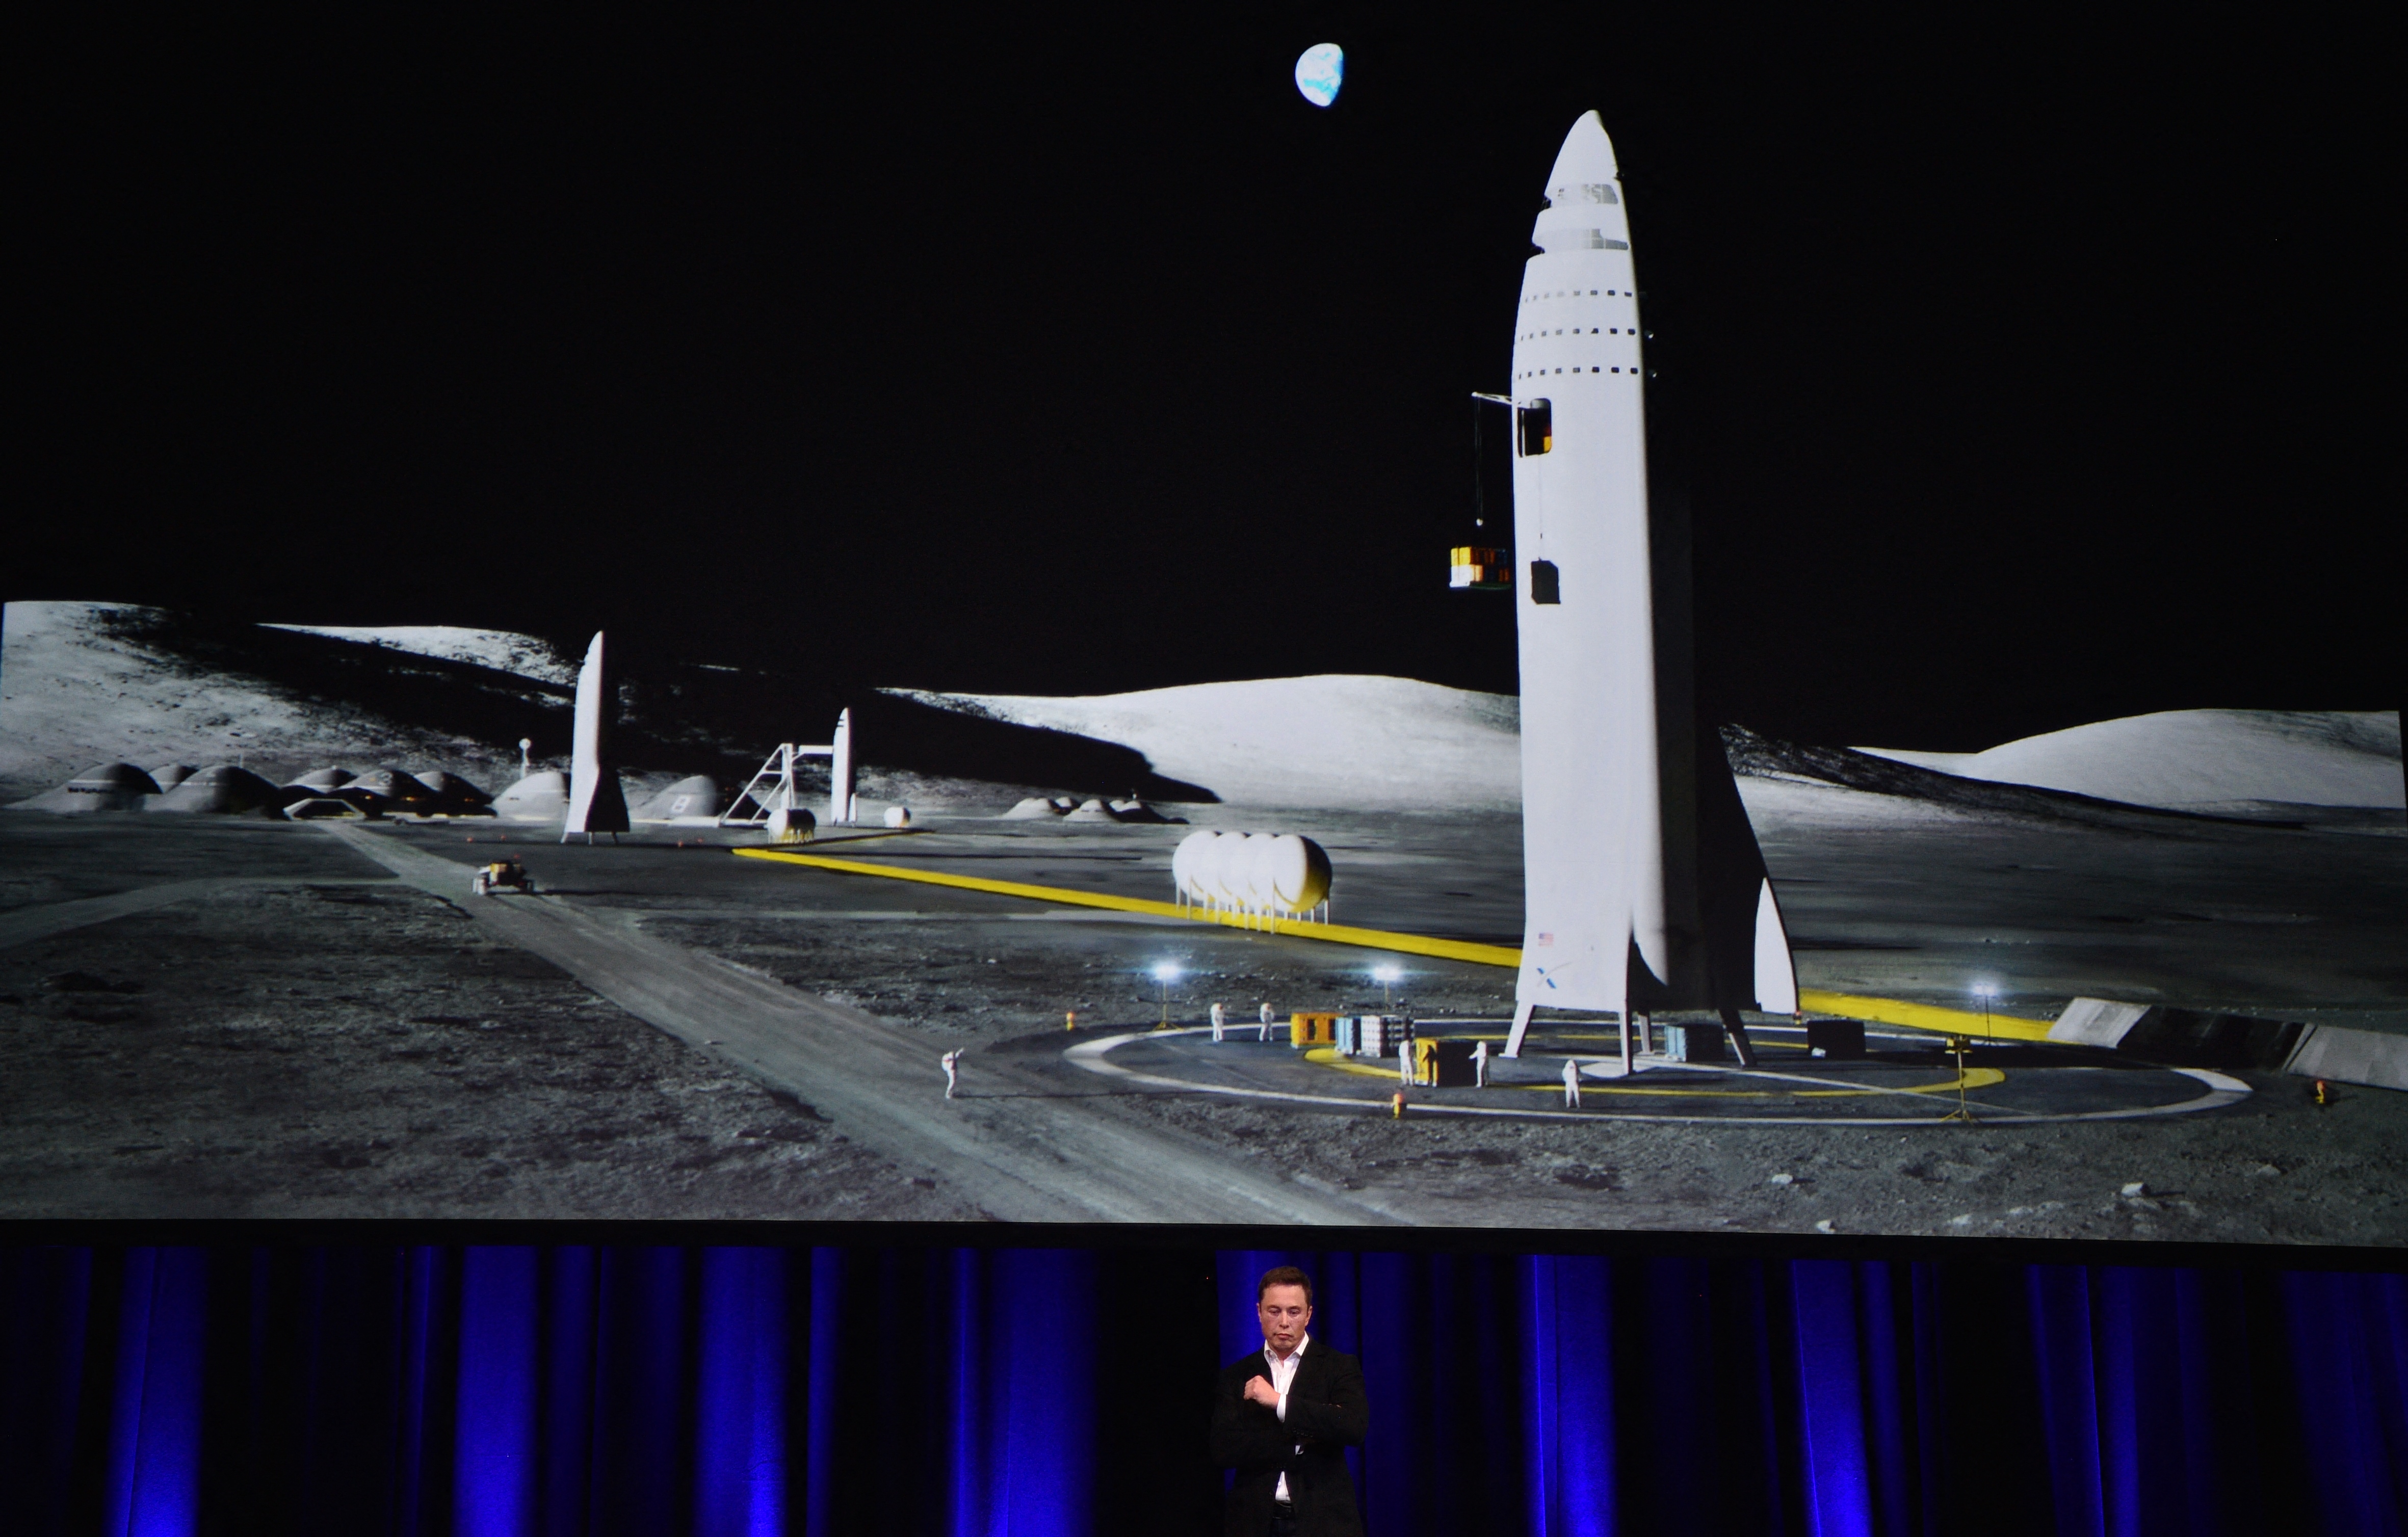 Elon Musk a Starship egy korai tervét mutatja be a 2017-es nemzetközi űrhajózási kongresszuson